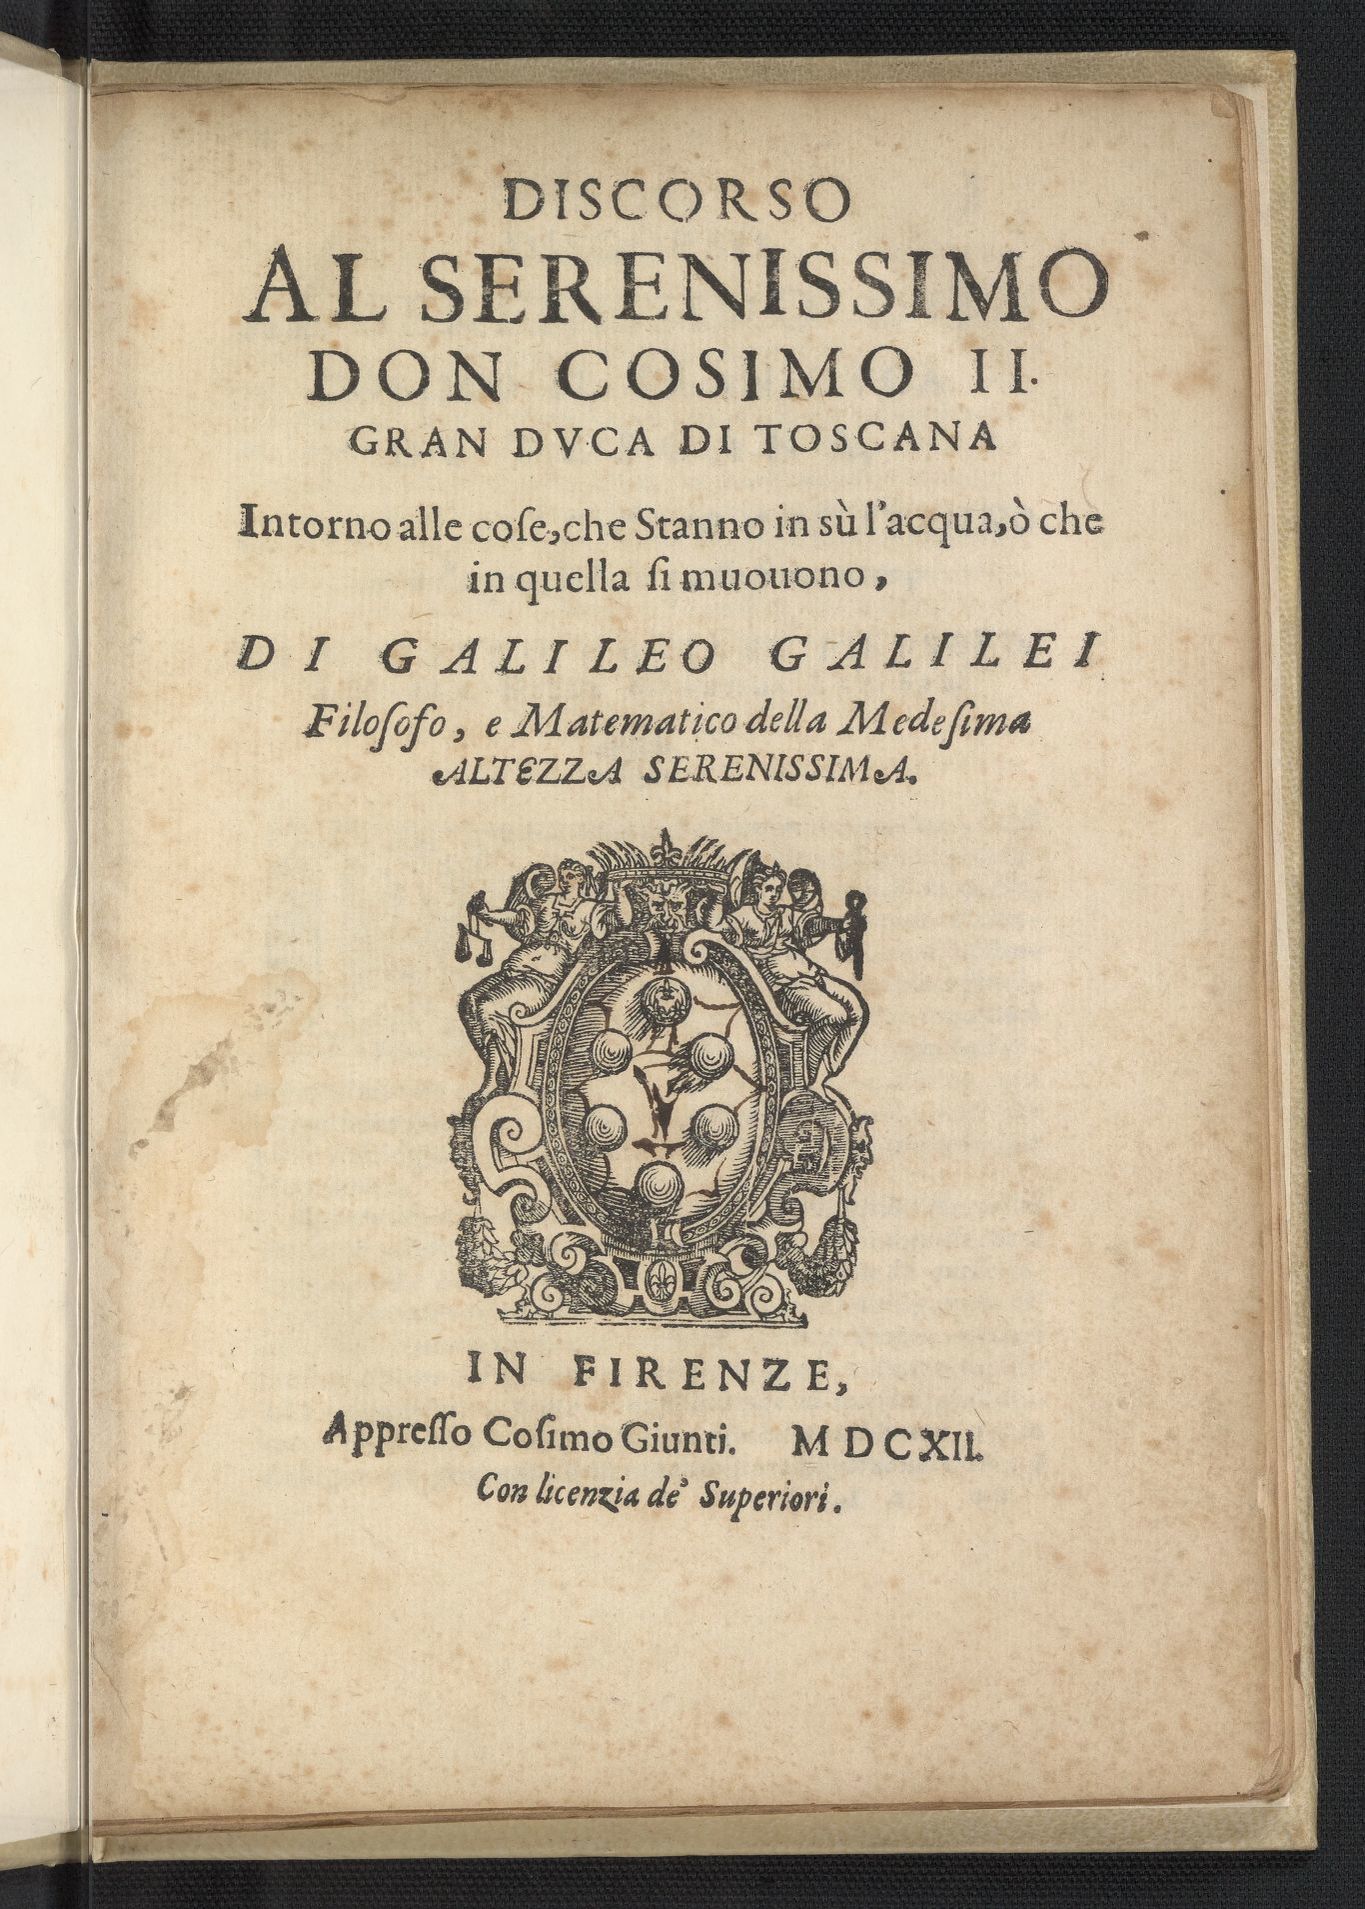 Discorso Al Serenissimo Don Cosimo II by Galileo